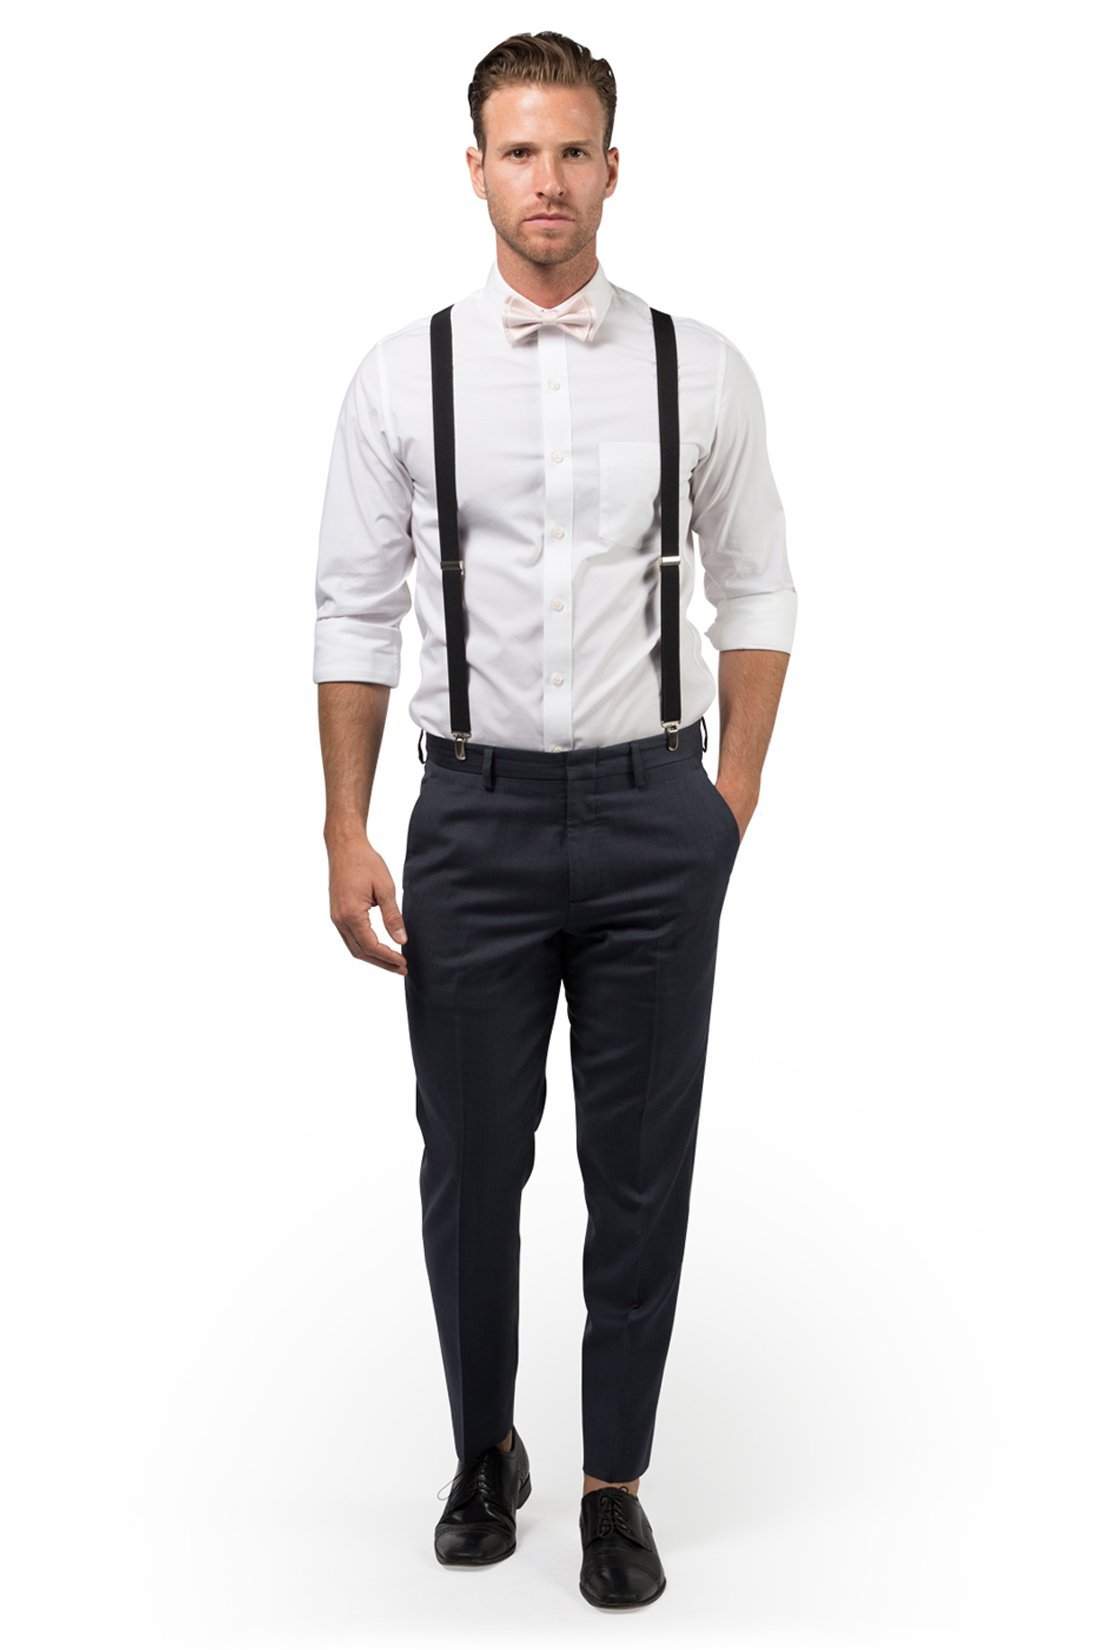 Black Suspenders & Bow Ties